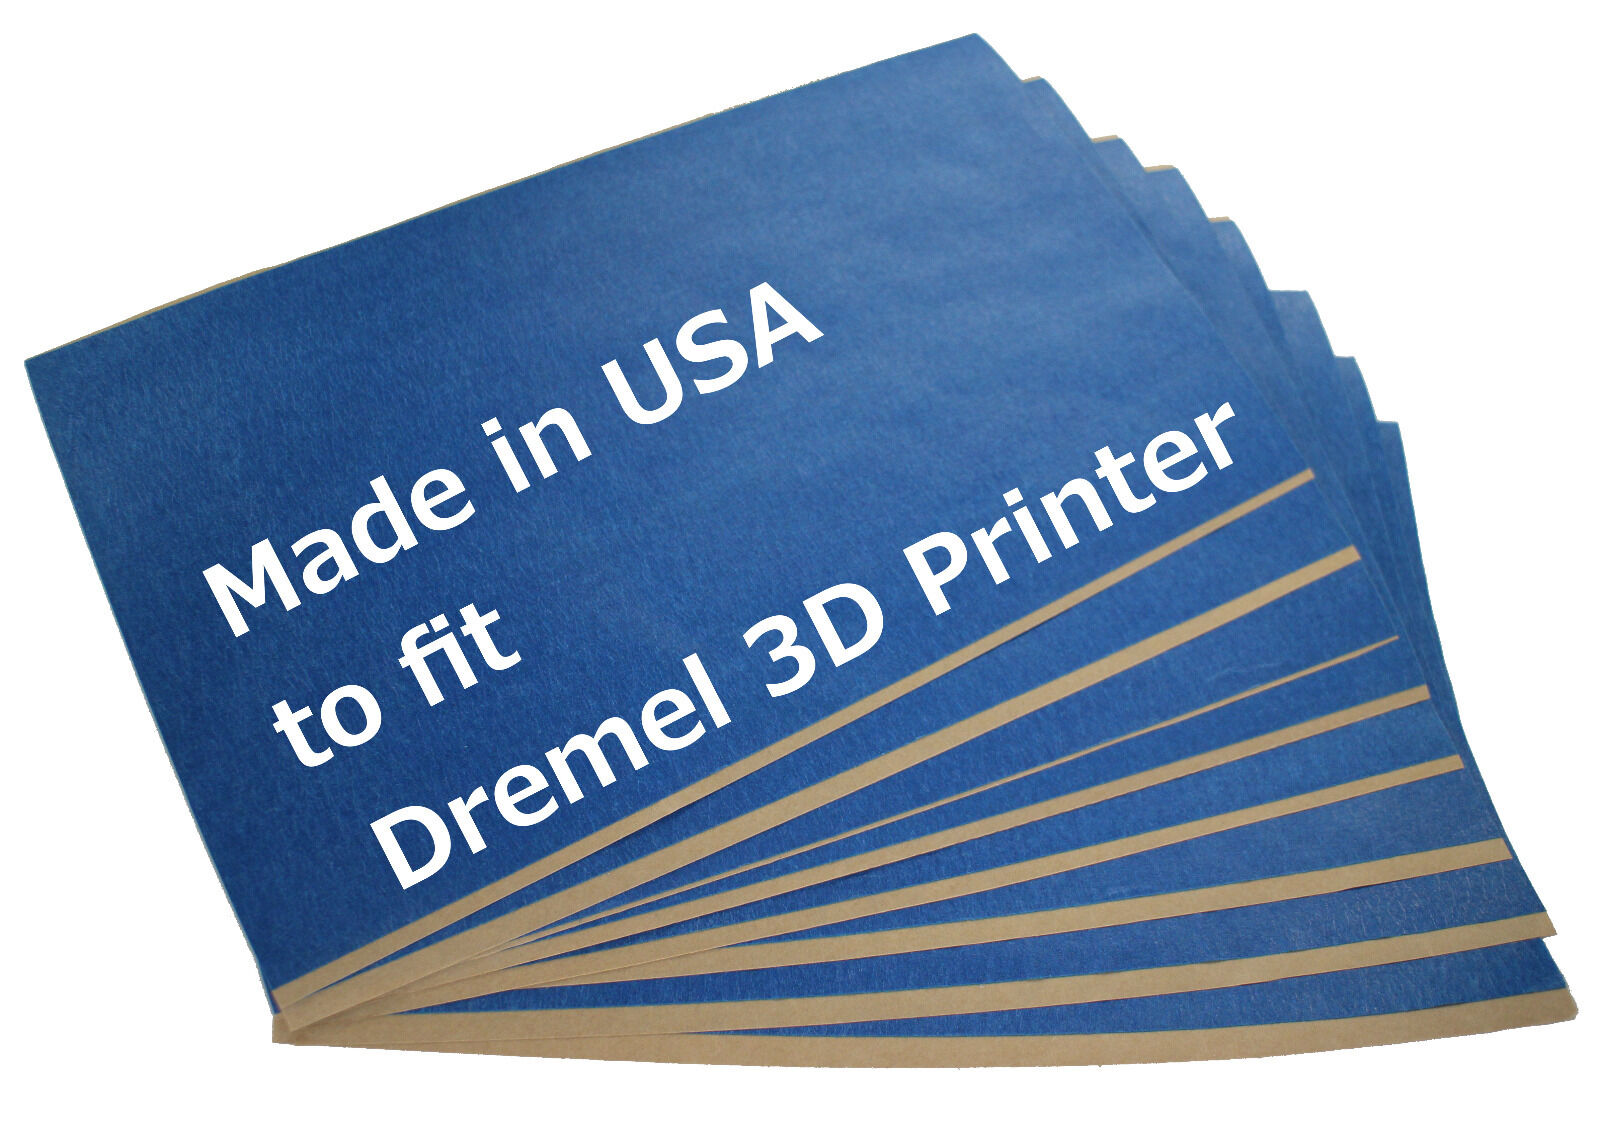 3D Printer Blue Tape for Dremel 3D40 Build Platform (10 pack)